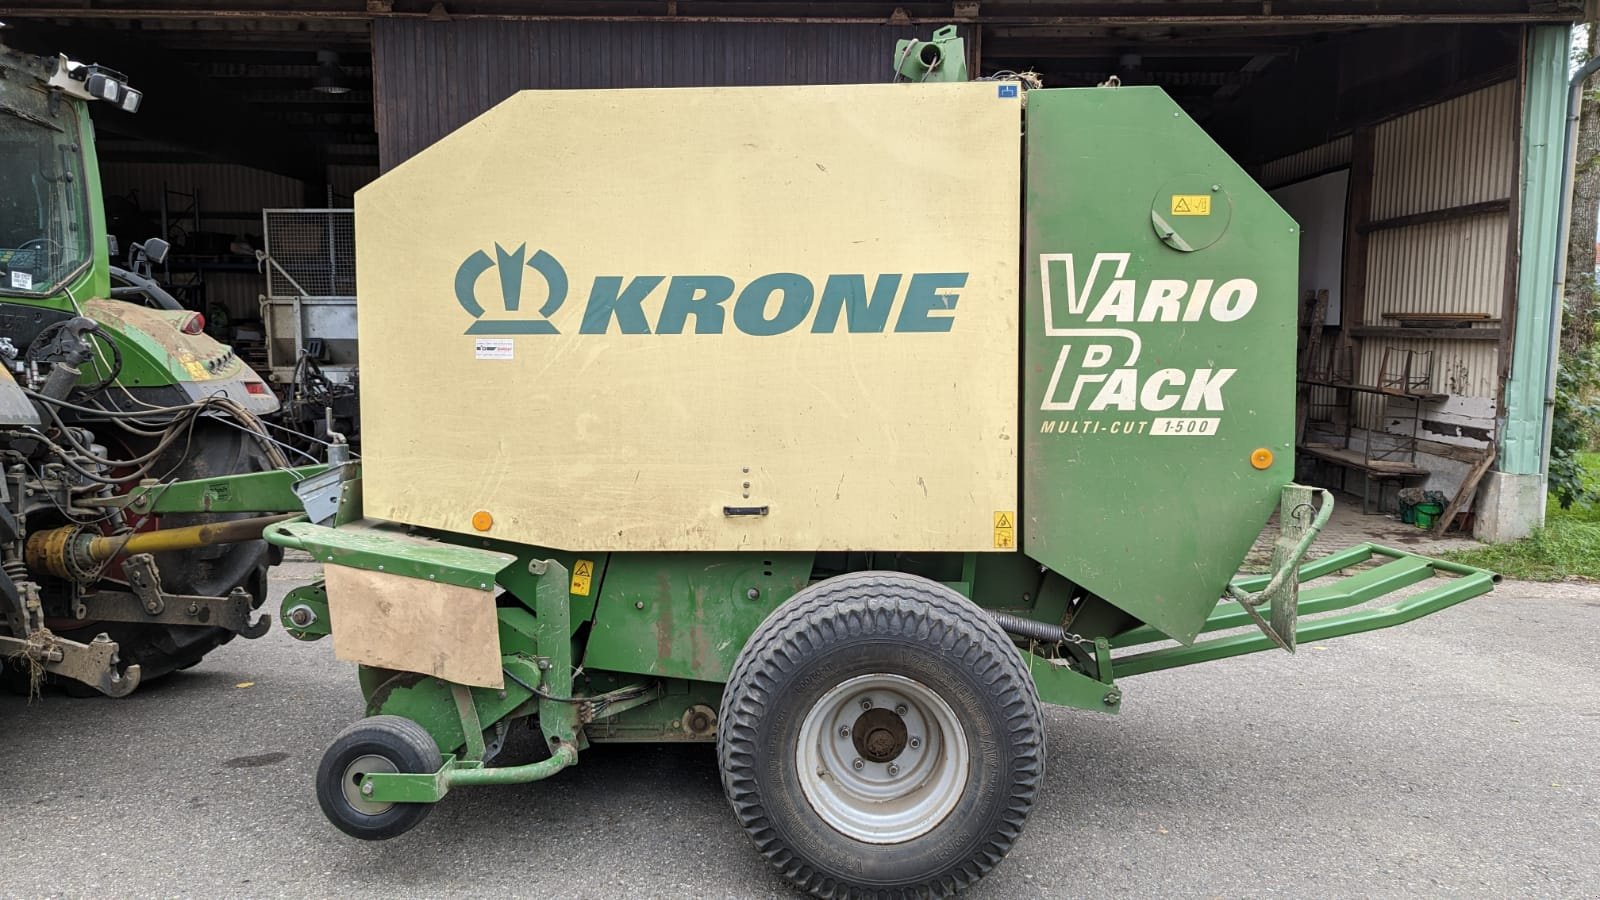 Hochdruckpresse типа Krone Vario Pack 1500, Gebrauchtmaschine в Donaueschingen (Фотография 1)